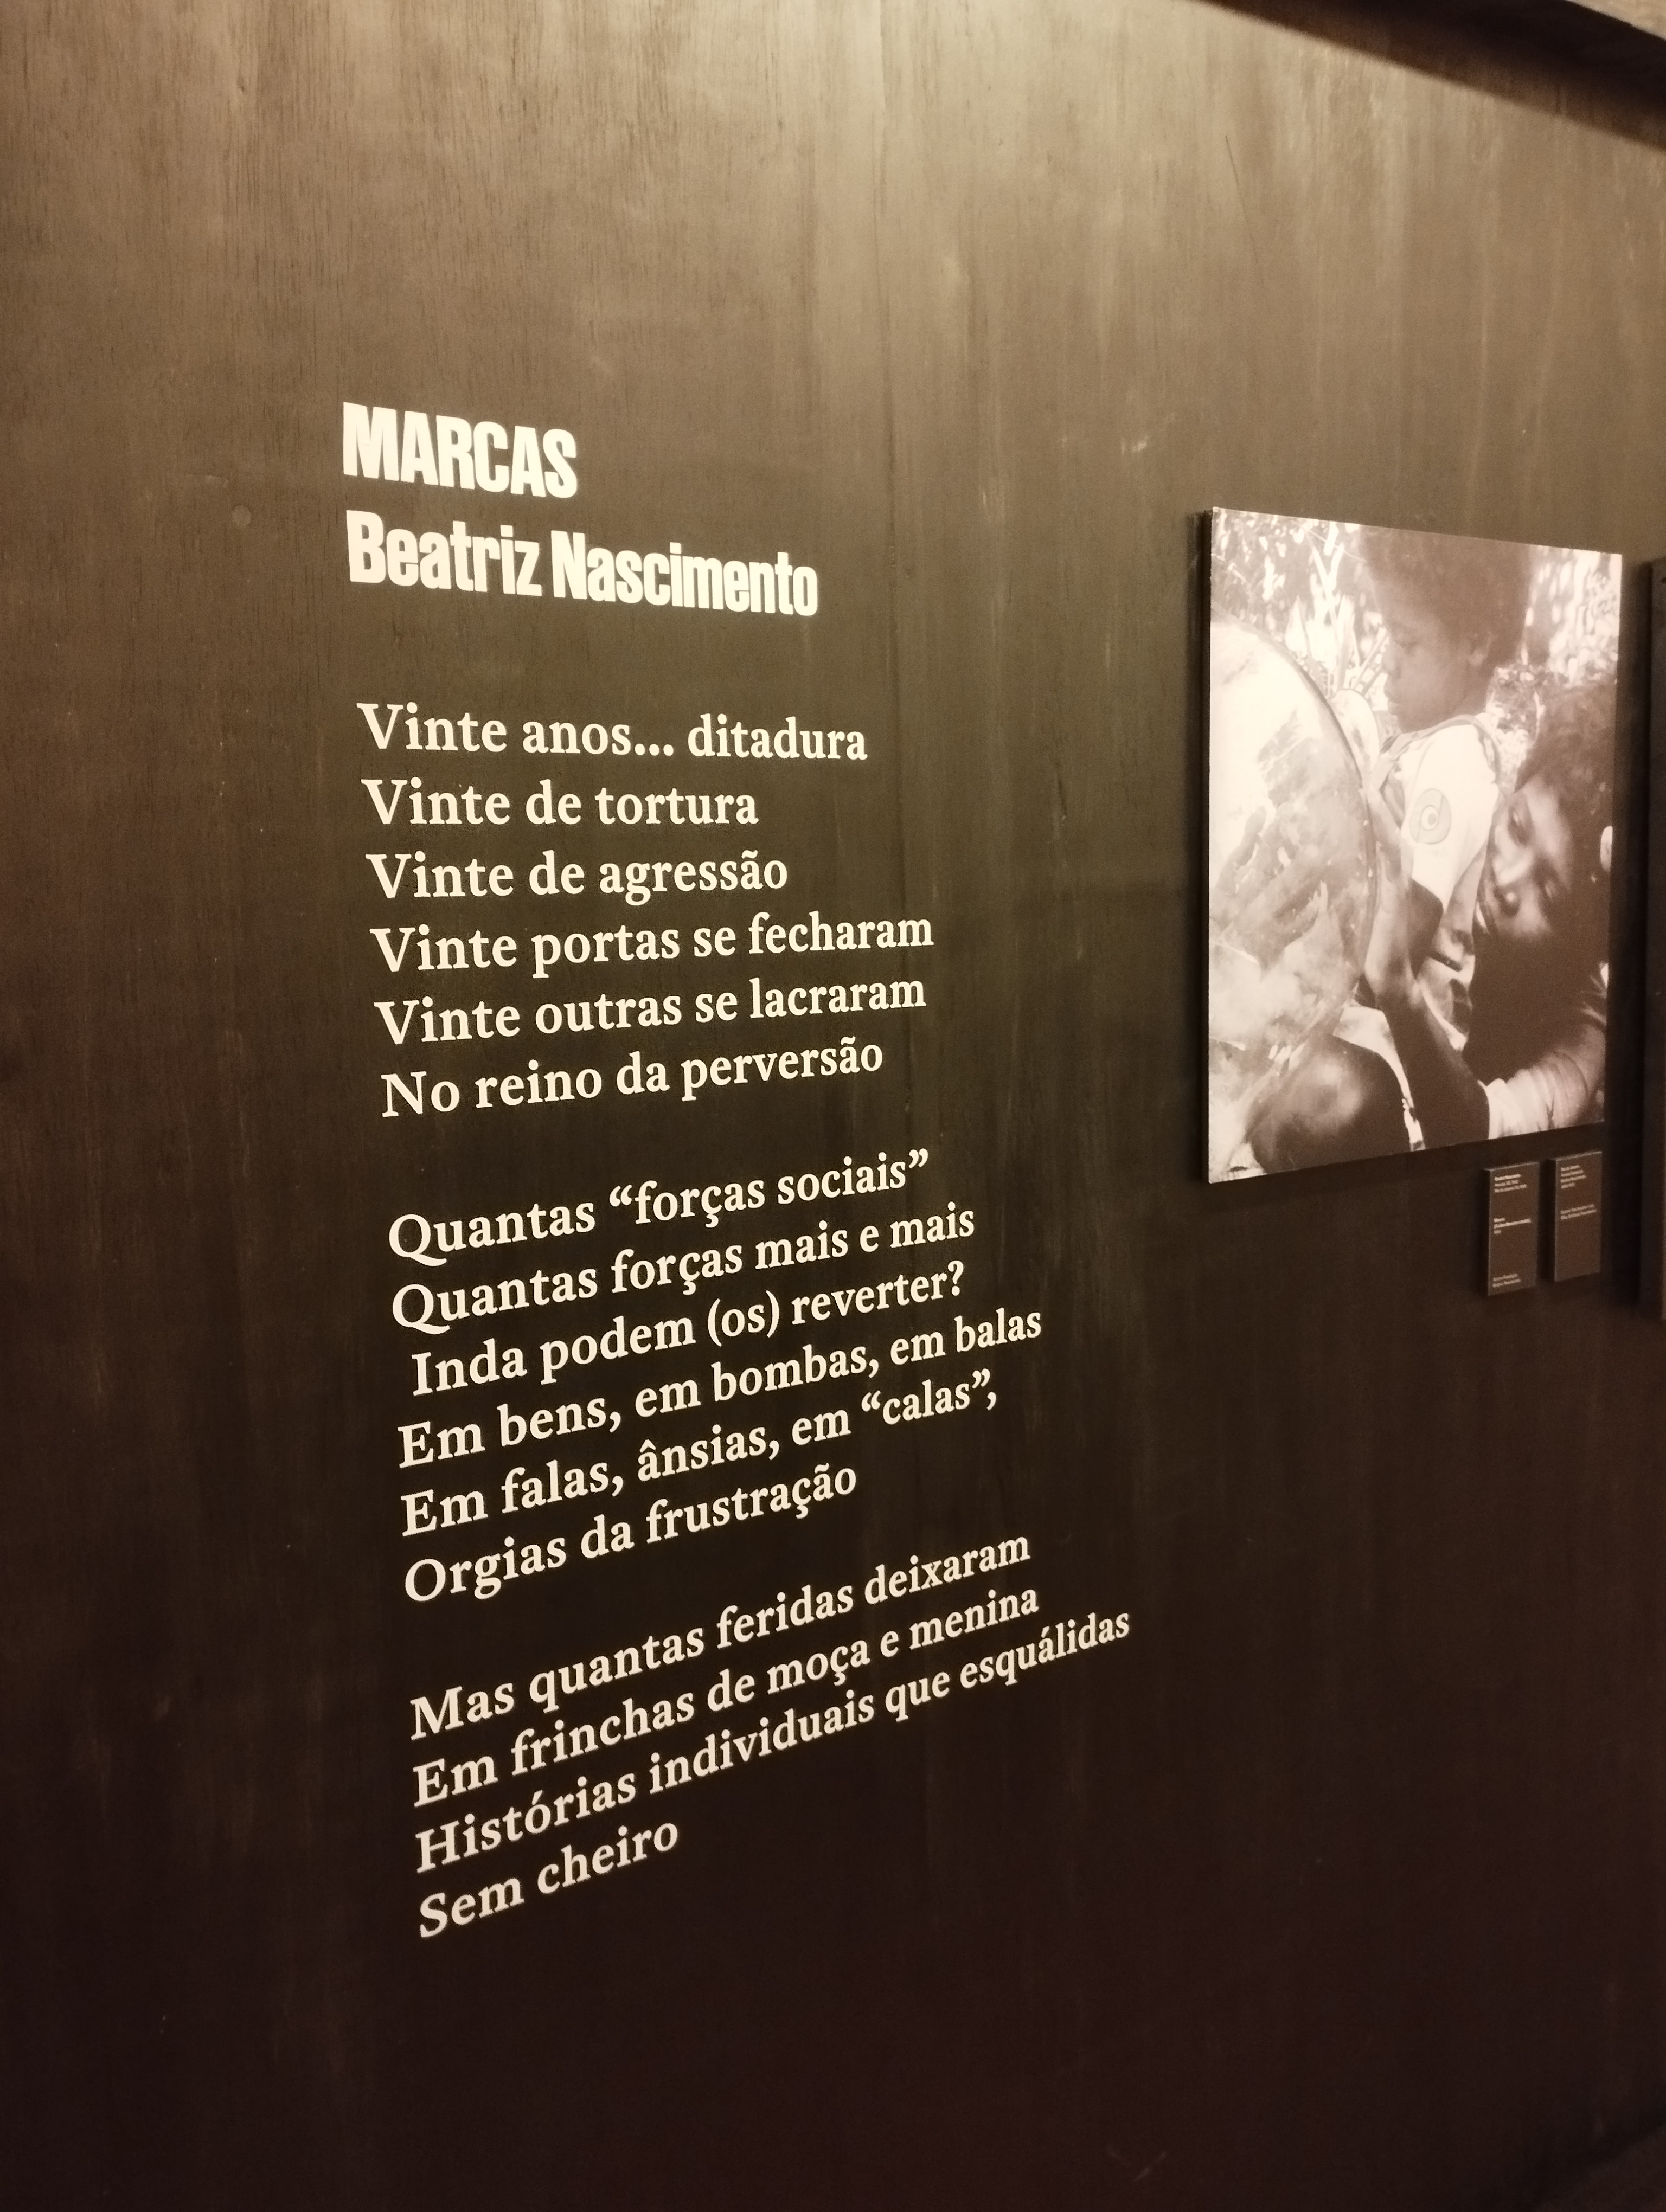 Poema "Marcas" com letras brancas, de Beatriz Nascimento na parede preta da exposição